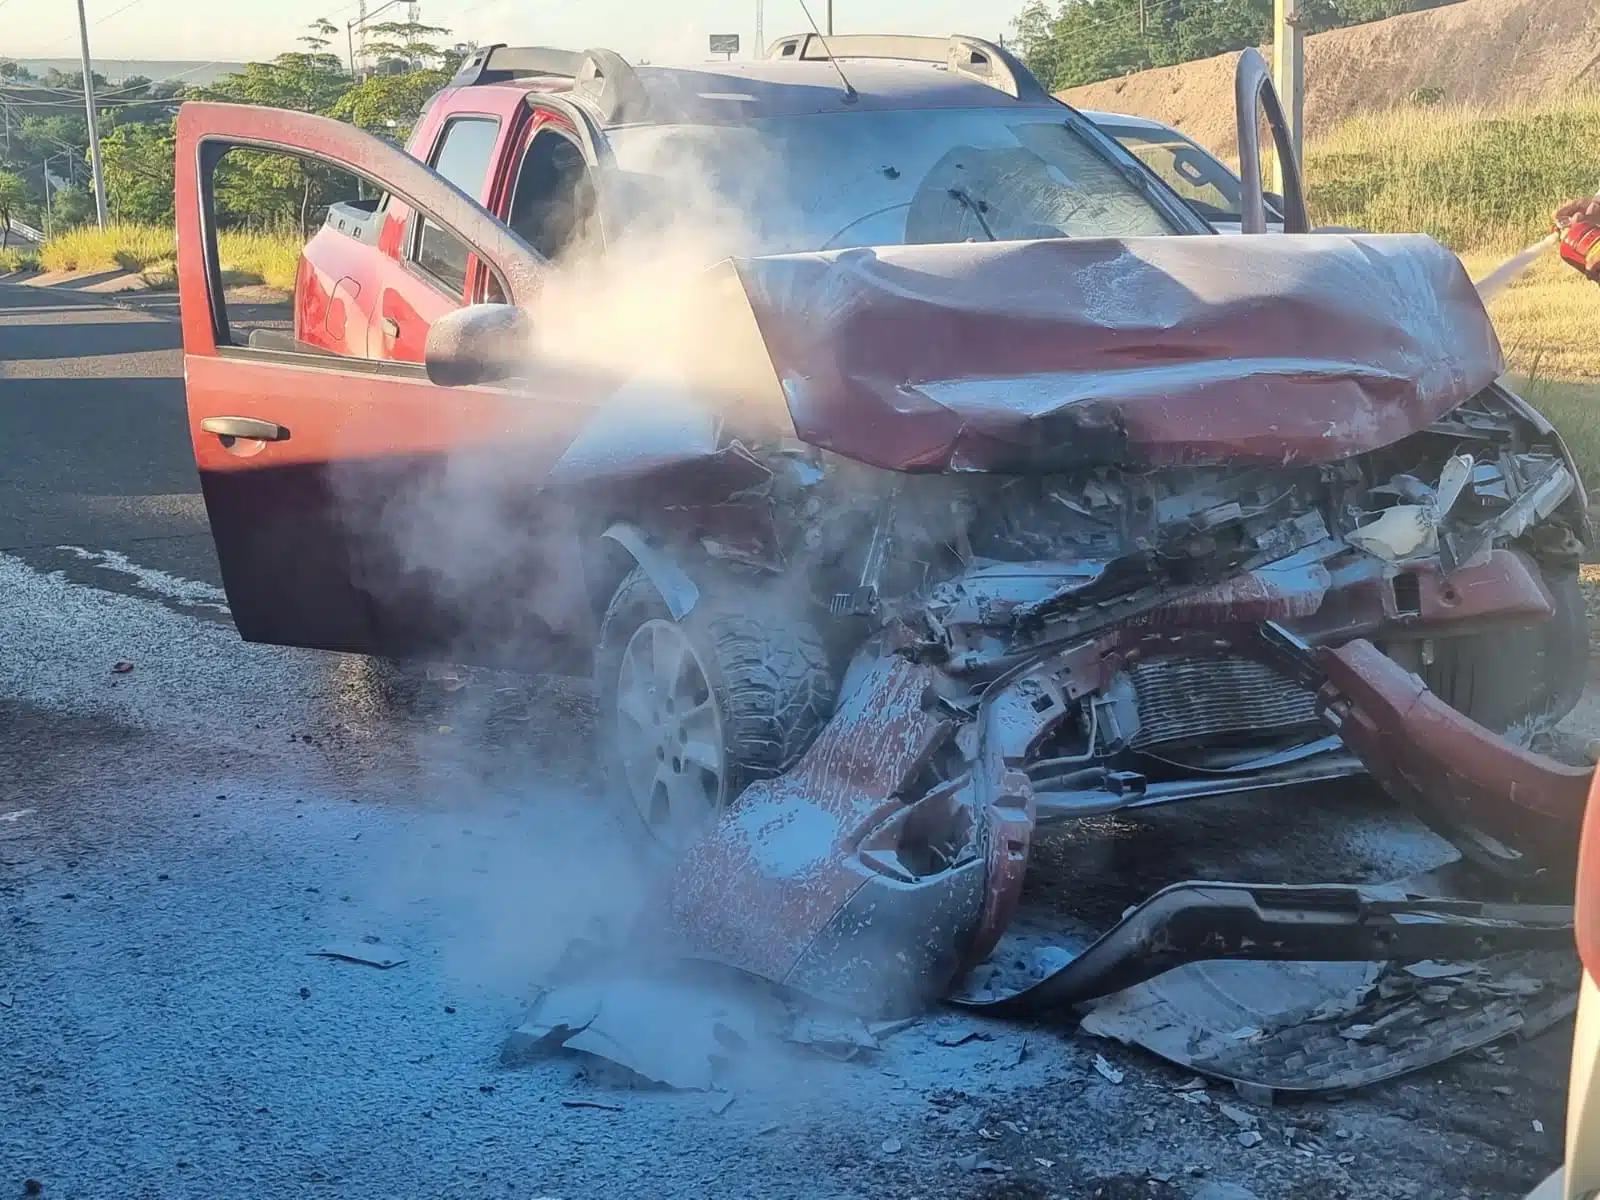 Camioneta semi incendiada del frente tras chocar en Culiacán